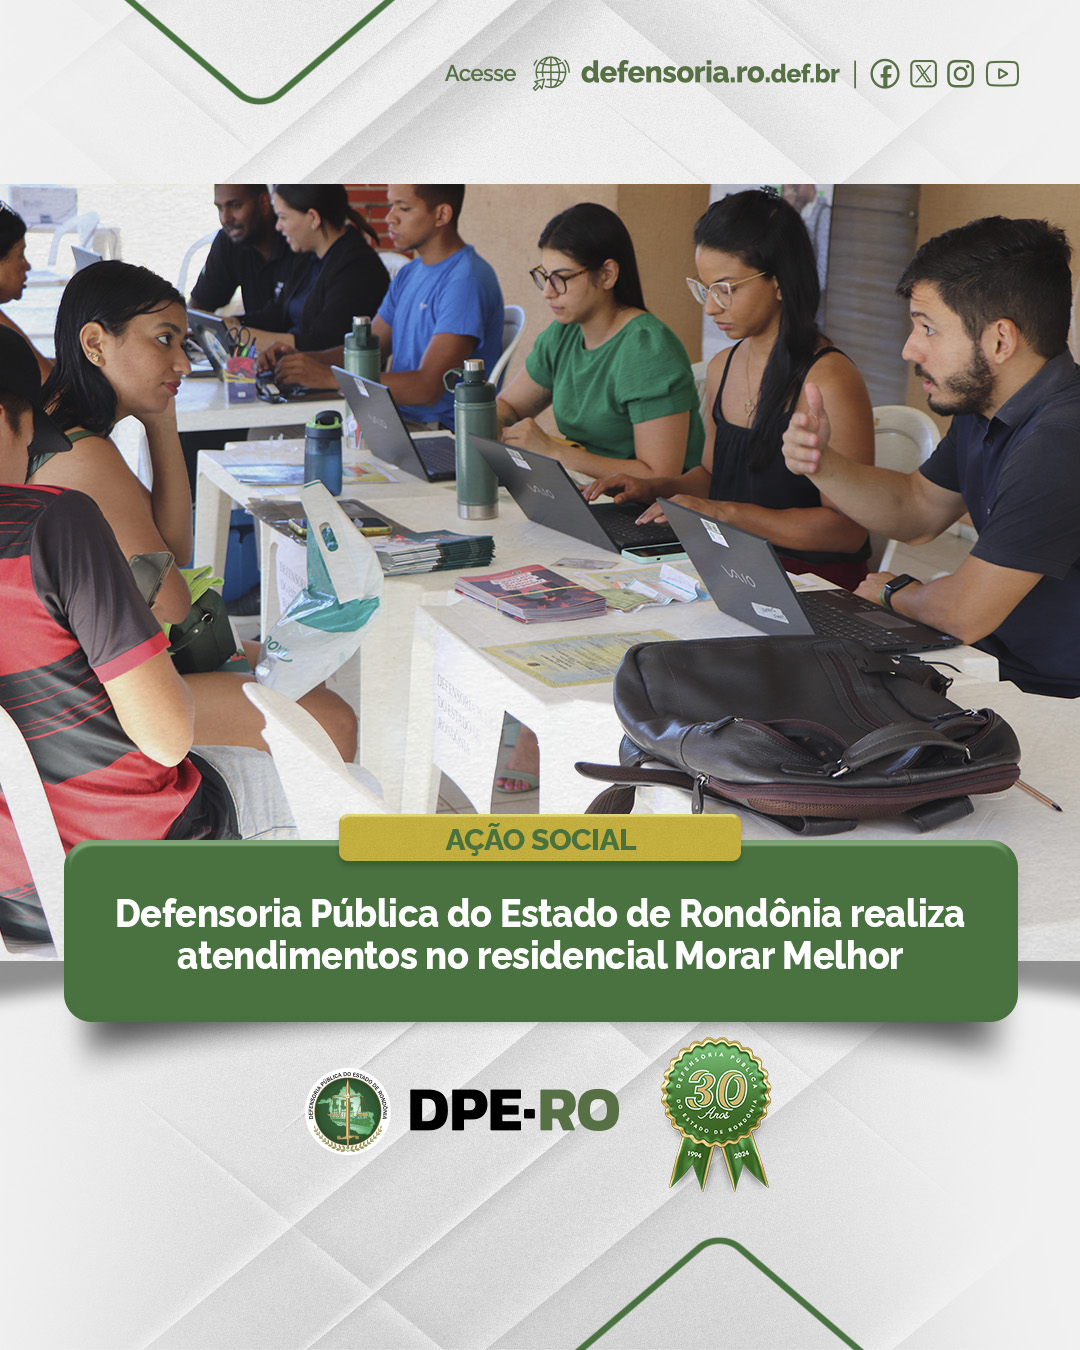 Defensoria Pública do Estado de Rondônia realiza atendimentos no residencial Morar Melhor